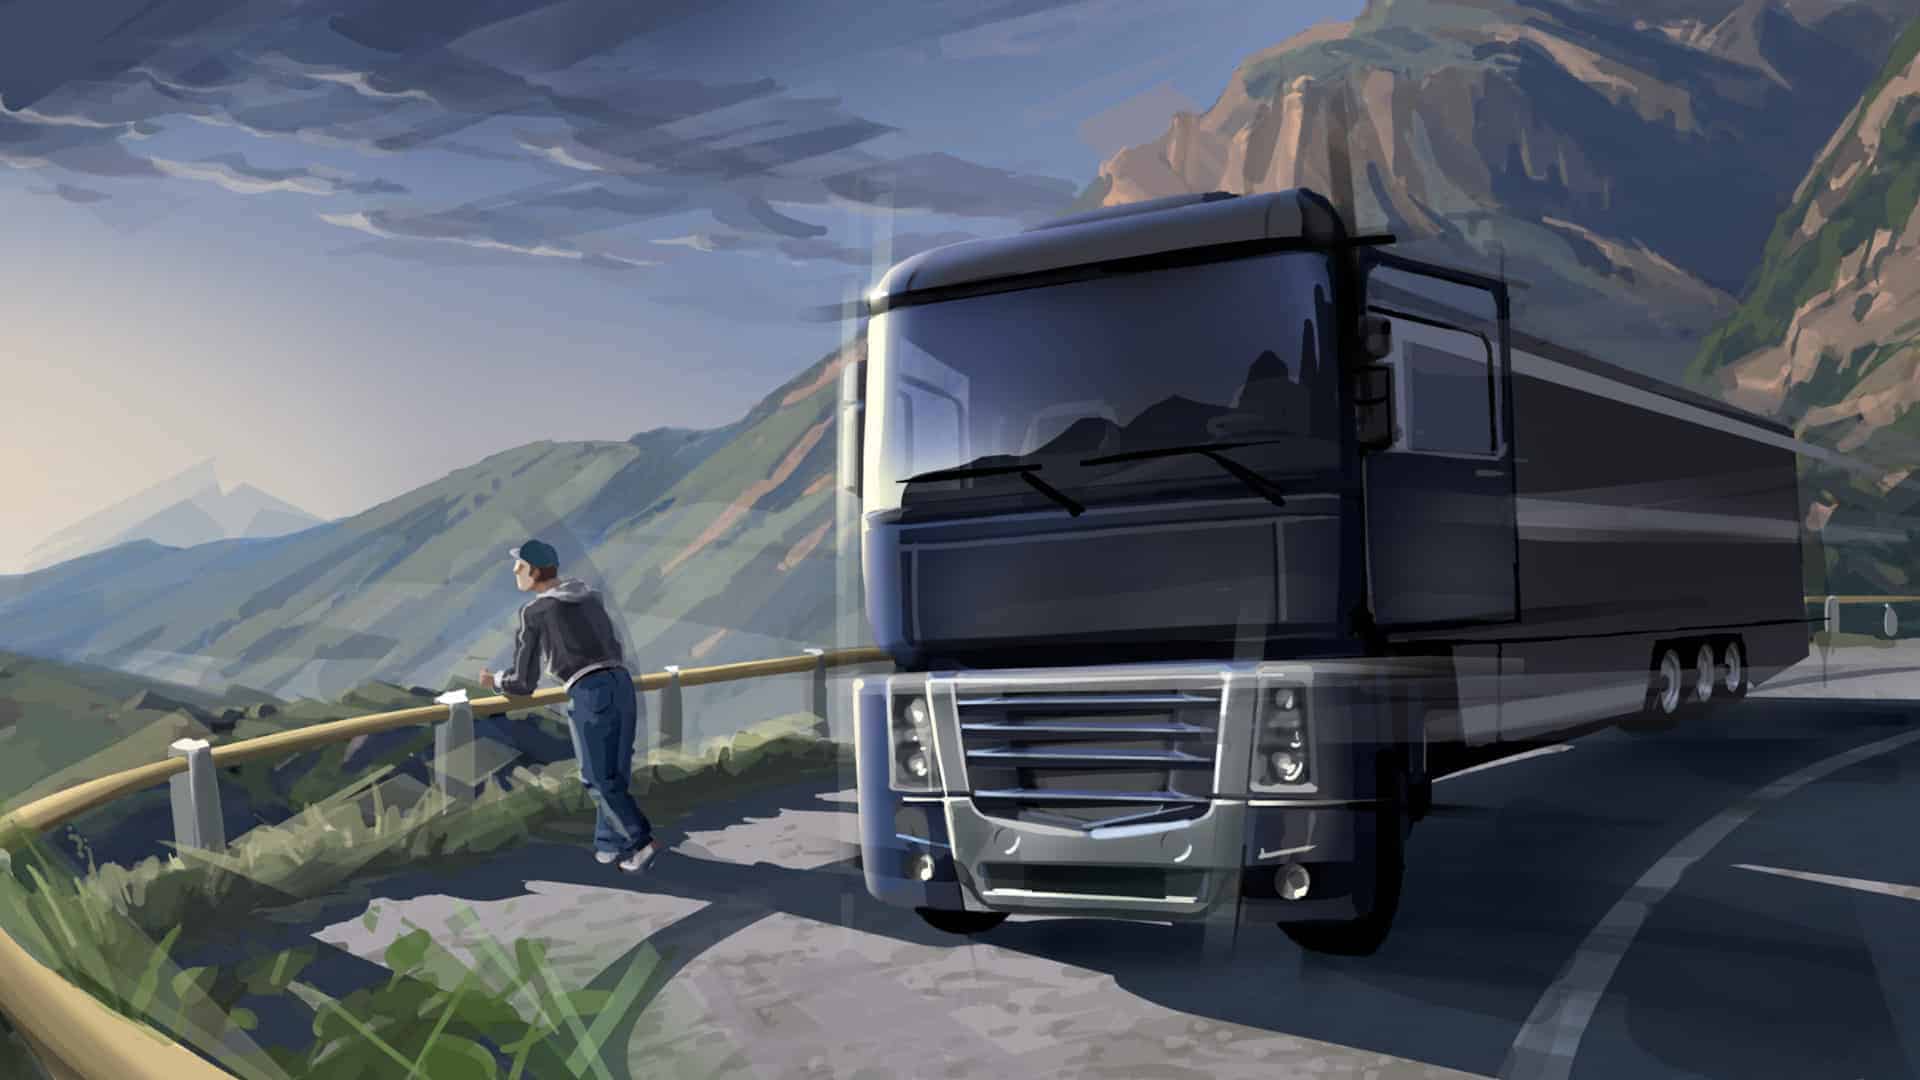 Euro truck simulator 2 original download torrent